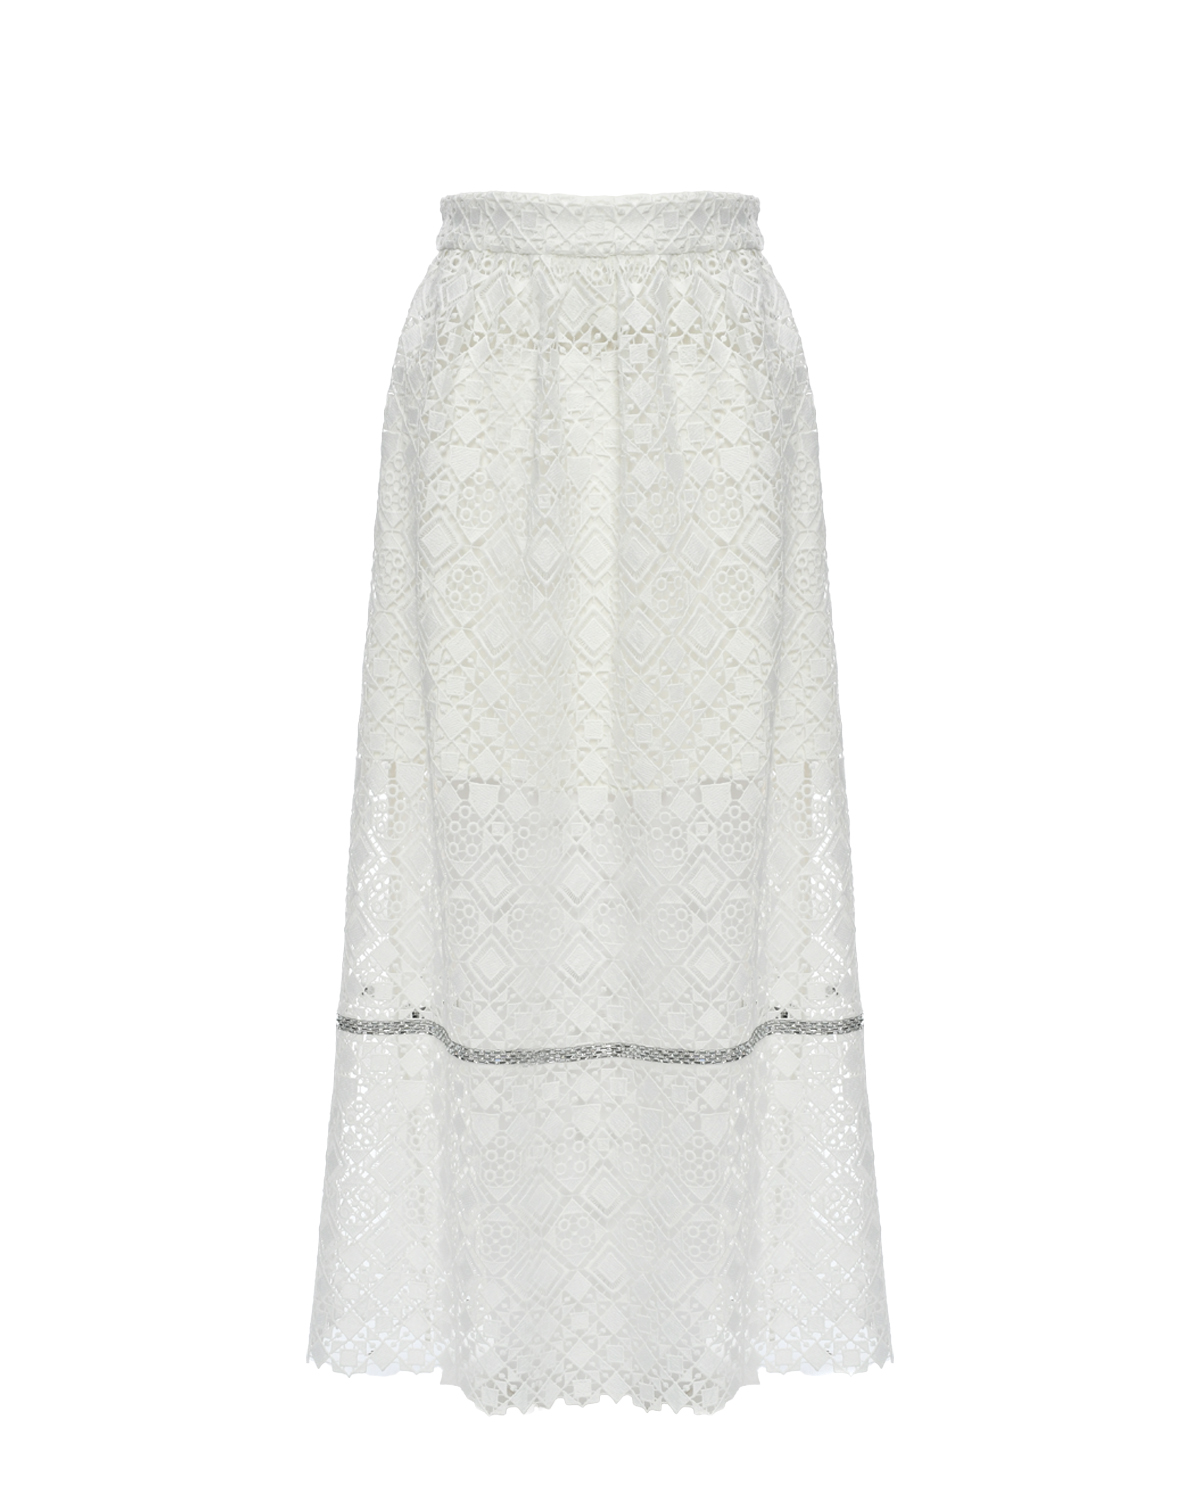 Кружевная юбка с отделкой бисером Elie Saab, размер 152, цвет белый - фото 1